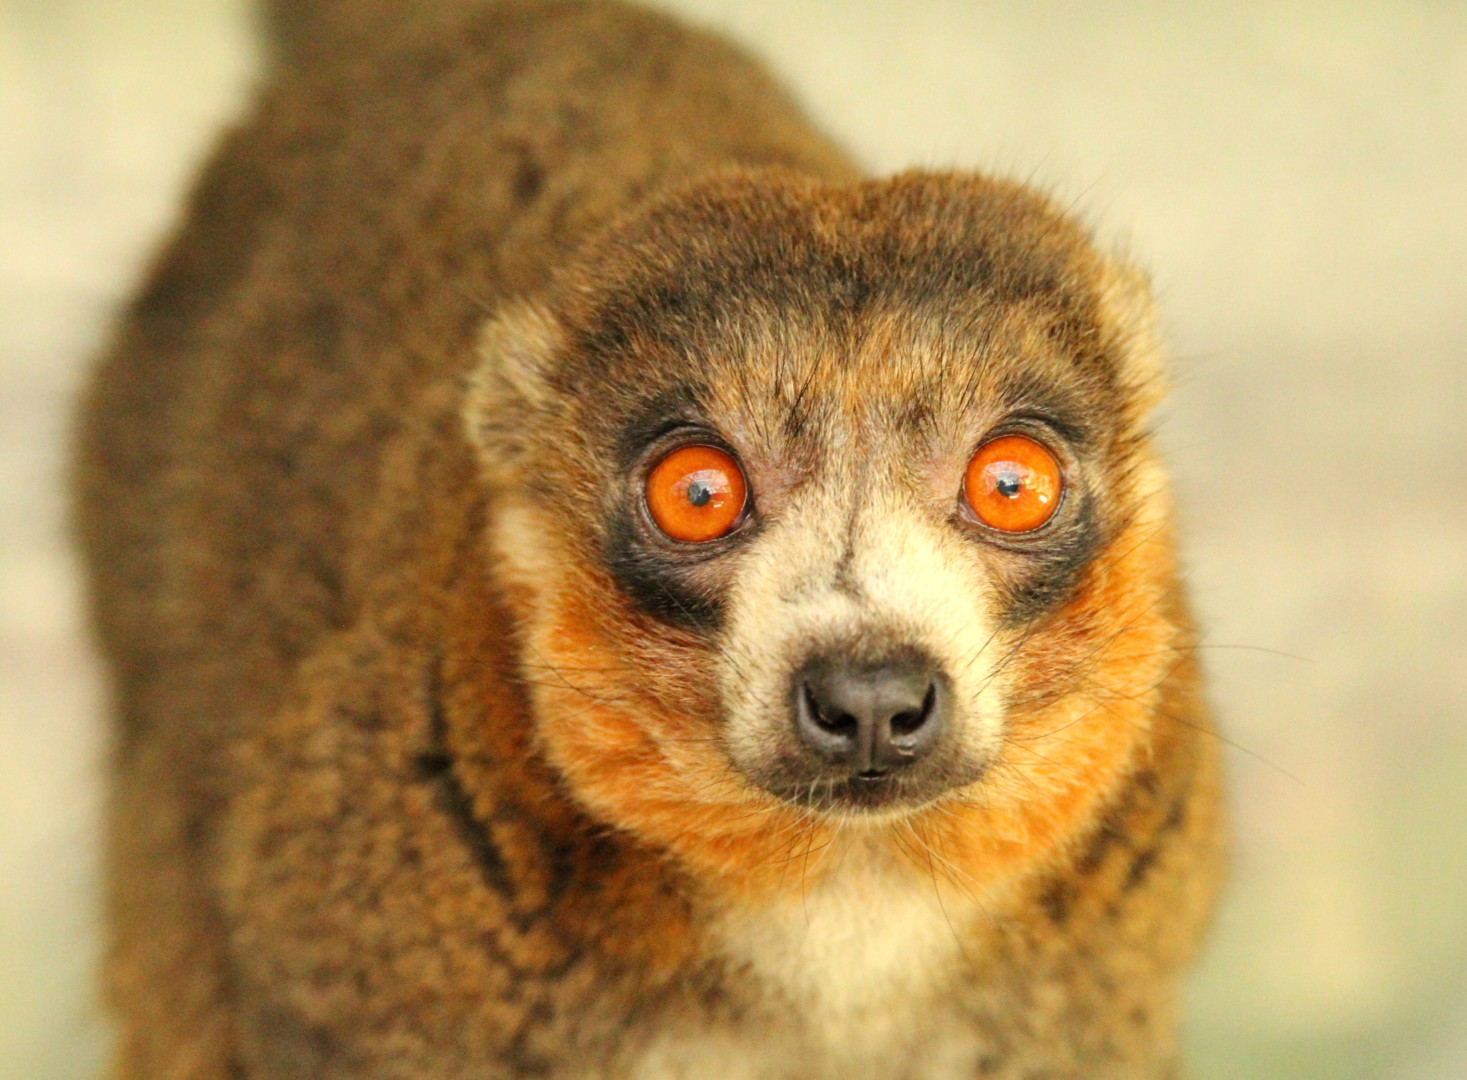 Mongoose lemur Bimbini looks straight at camera